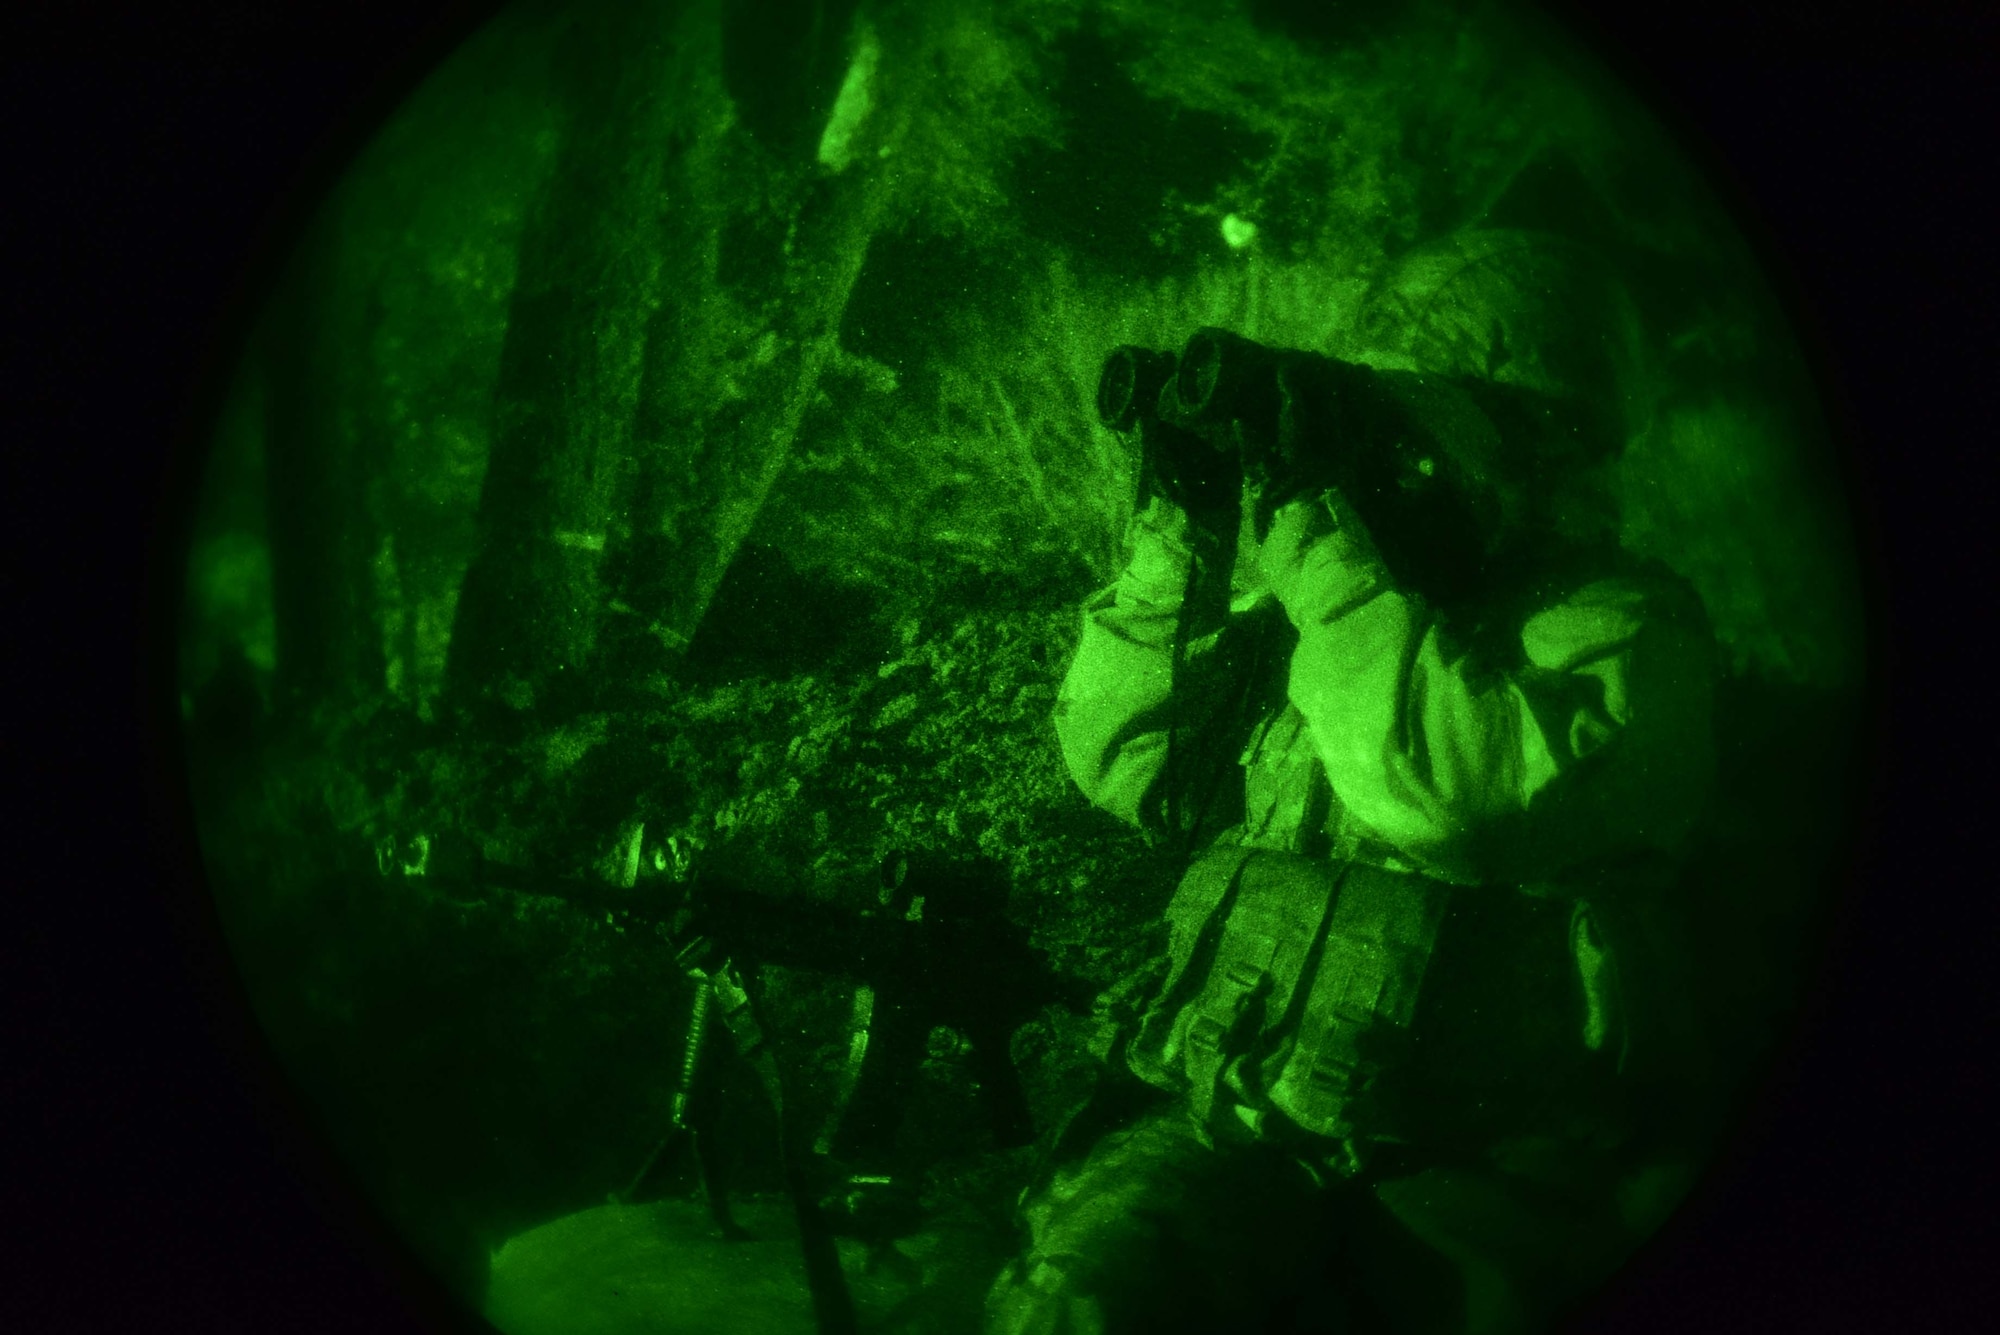 An Airmen looks through binoculars at night